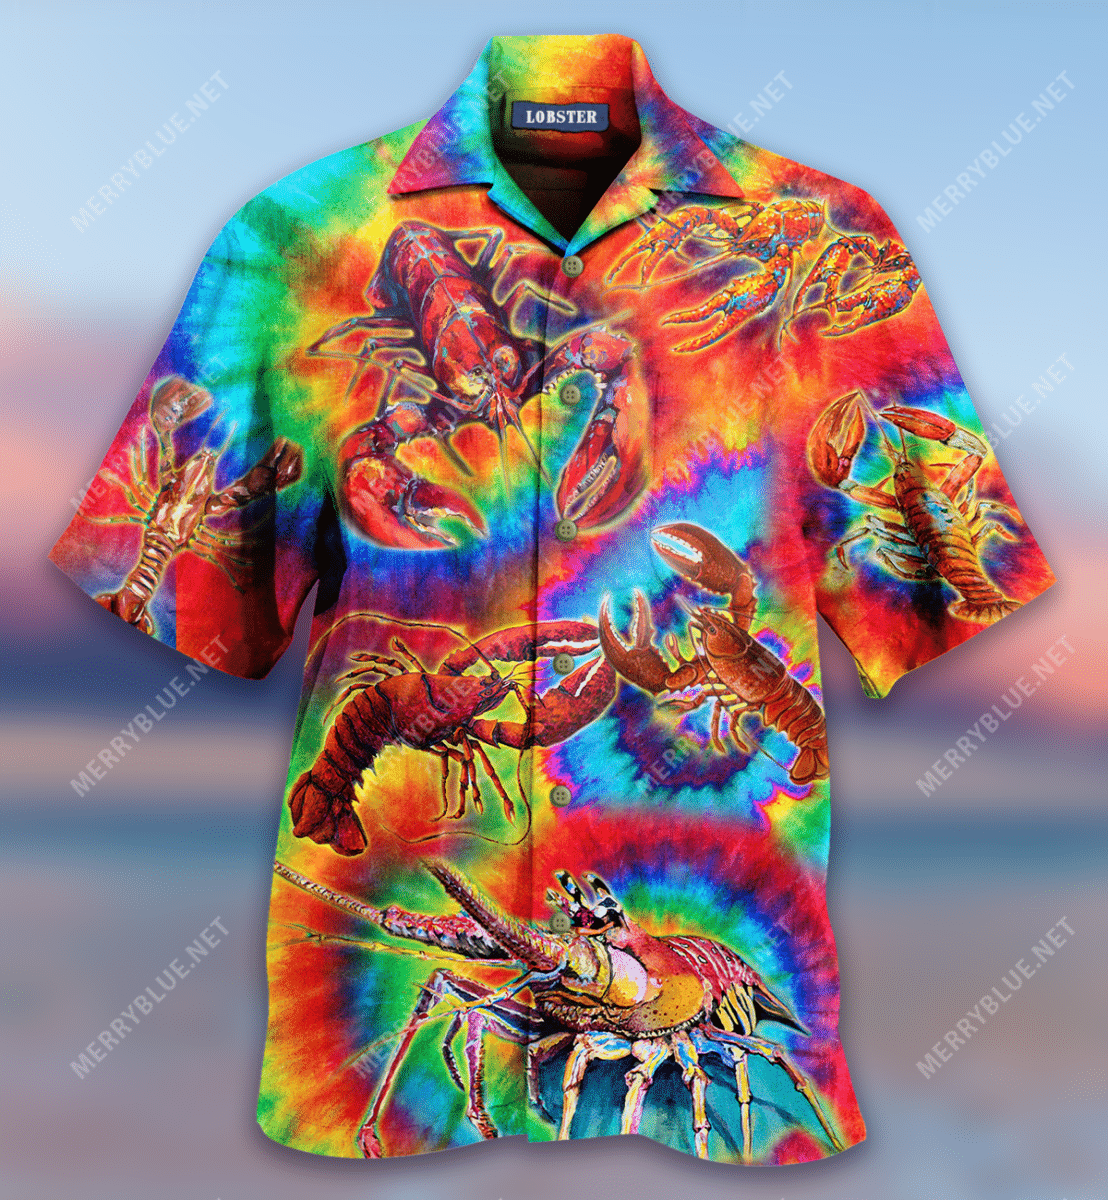 My Lobster Hawaiian Shirt